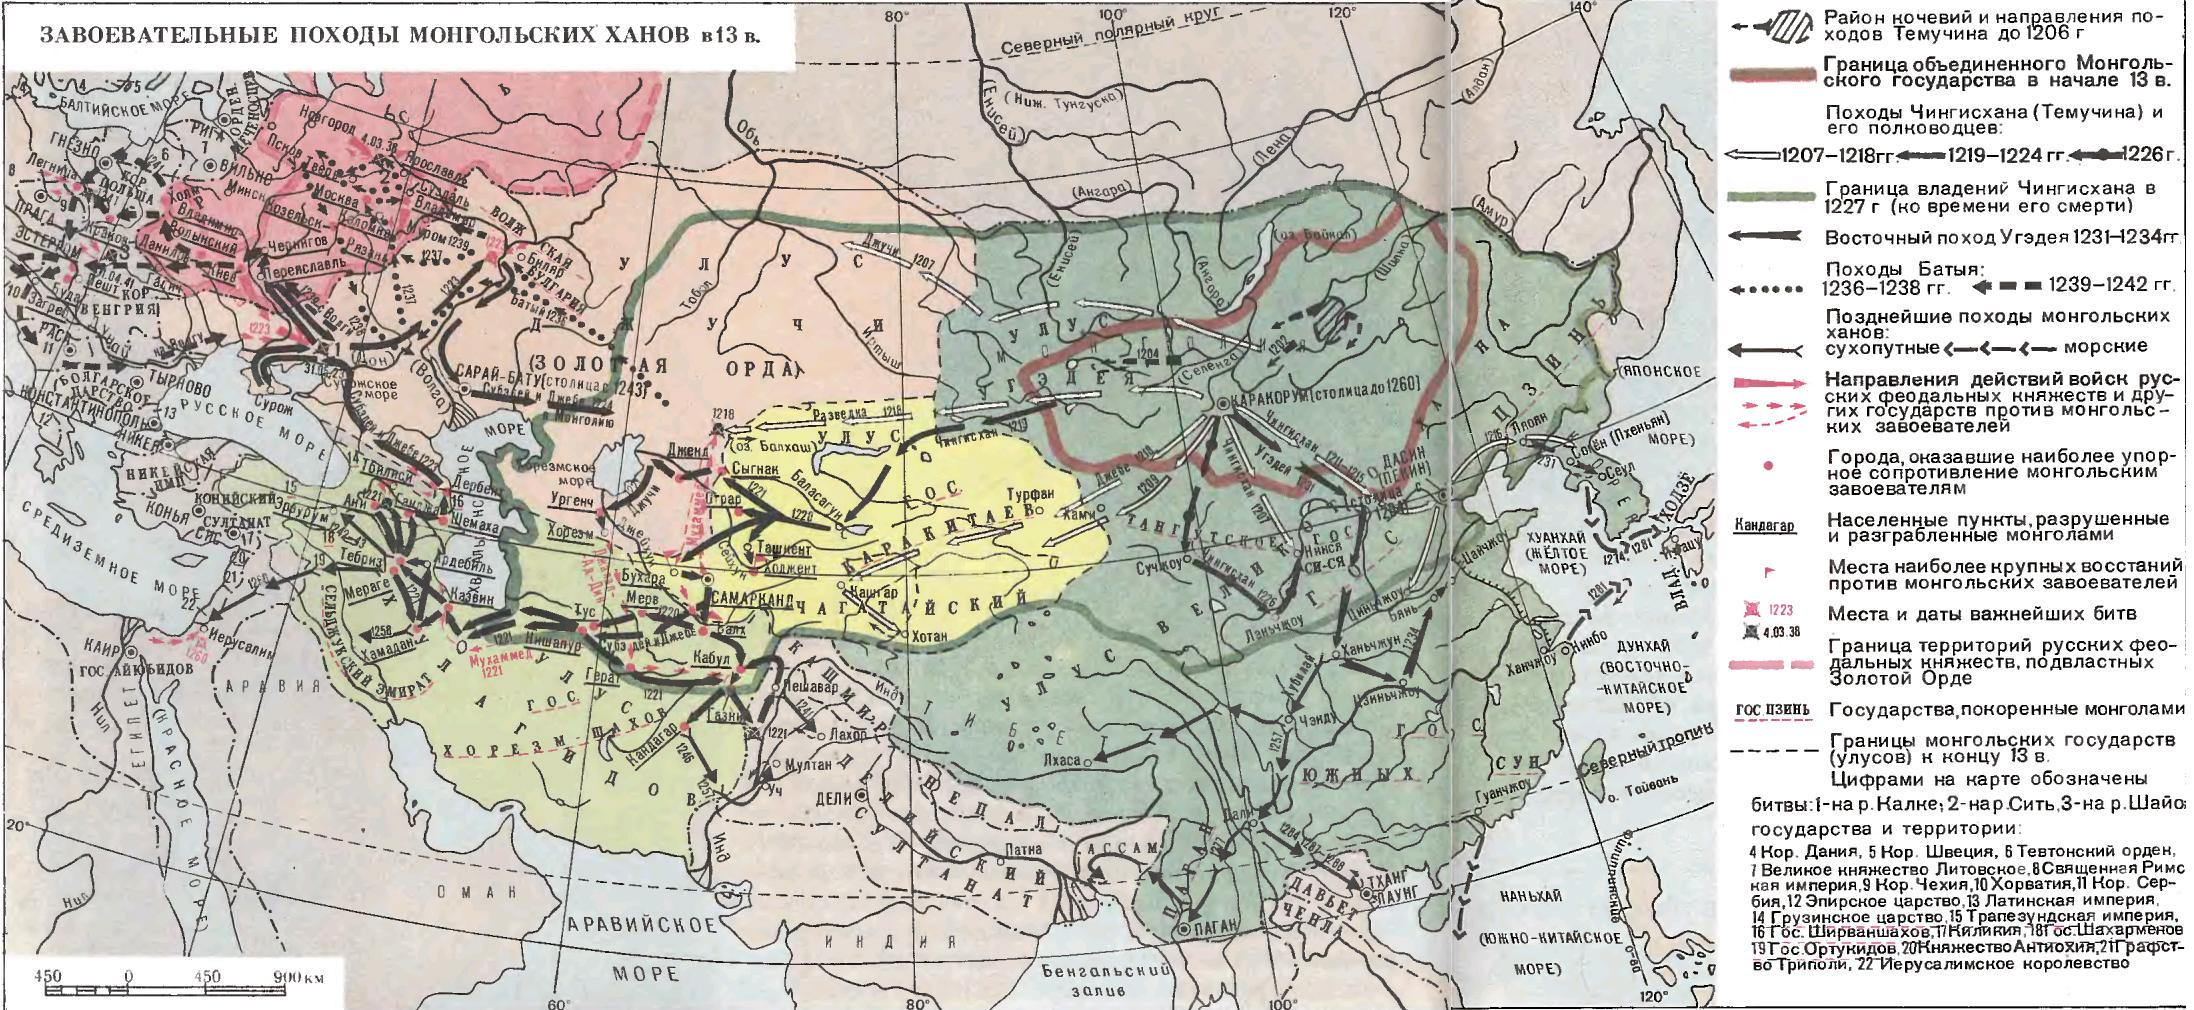 Завоевательные походы чингисхана средняя азия. Завоевания Чингисхана карта. Карта монгольские завоевания Руси в 13 веке. Карта завоеваний монголов в 13 веке. Монгольская Империя 1223.